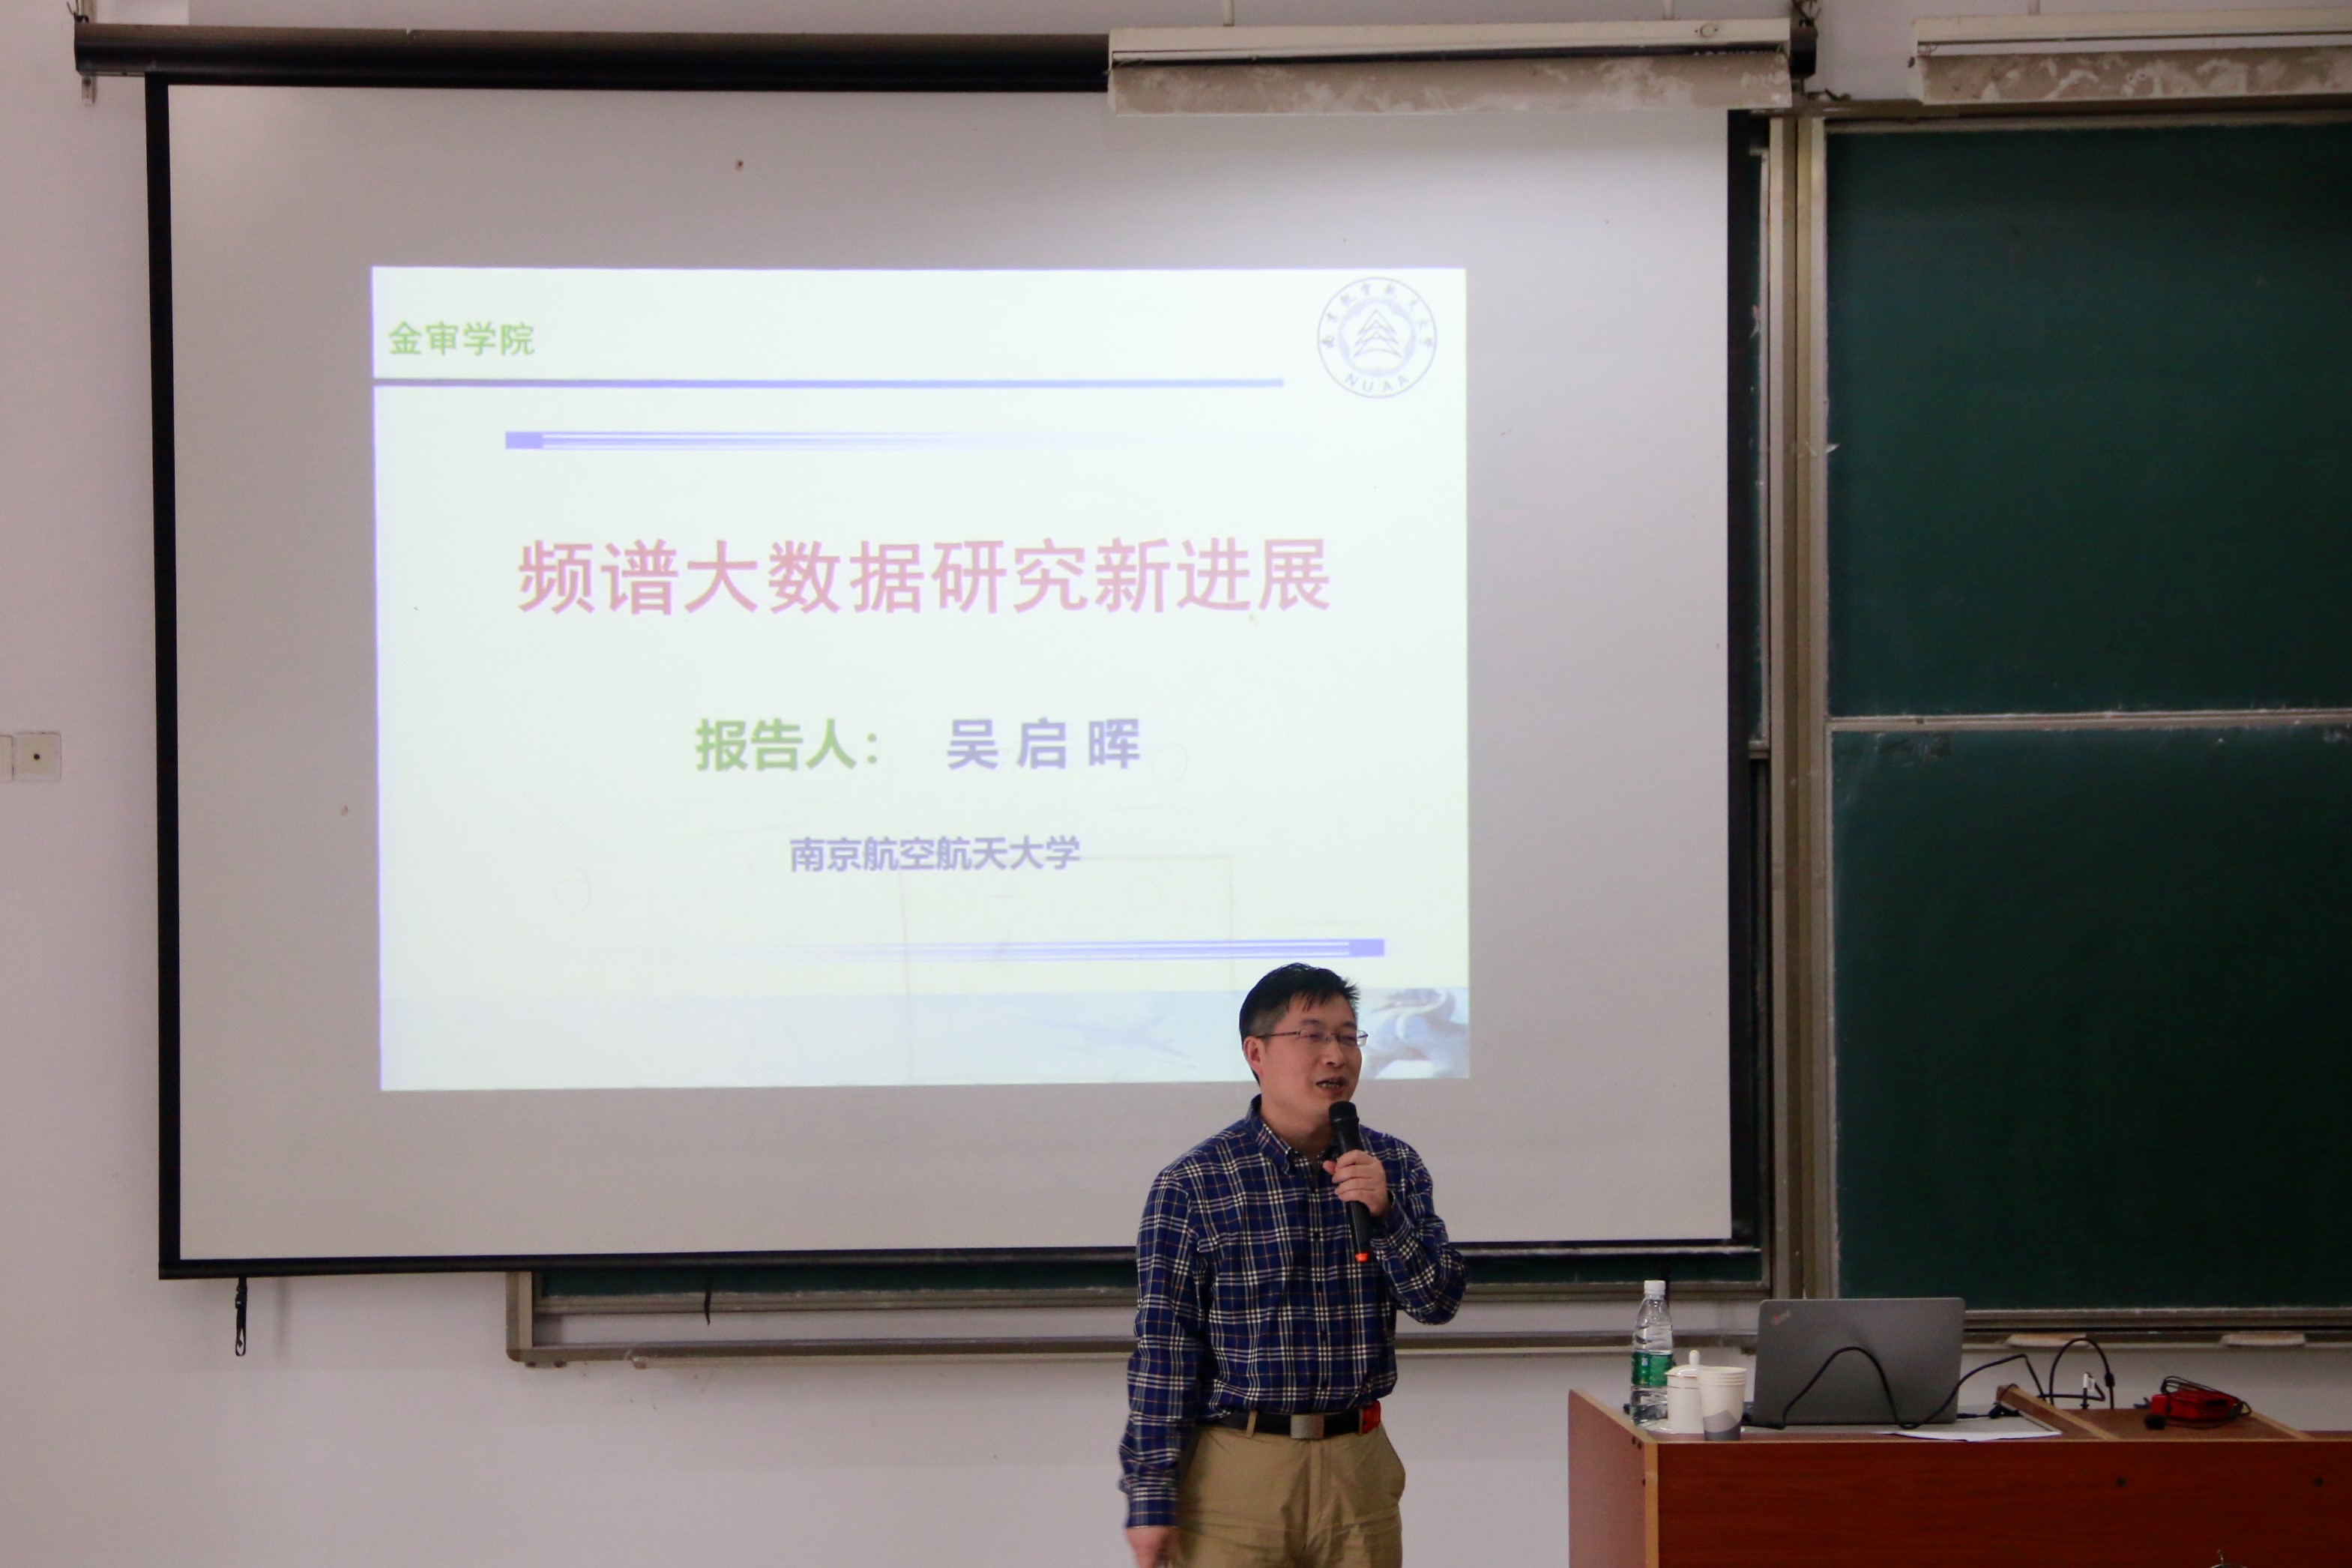 吳啟暉老師在南京審計大學金審學院作學術報告講座